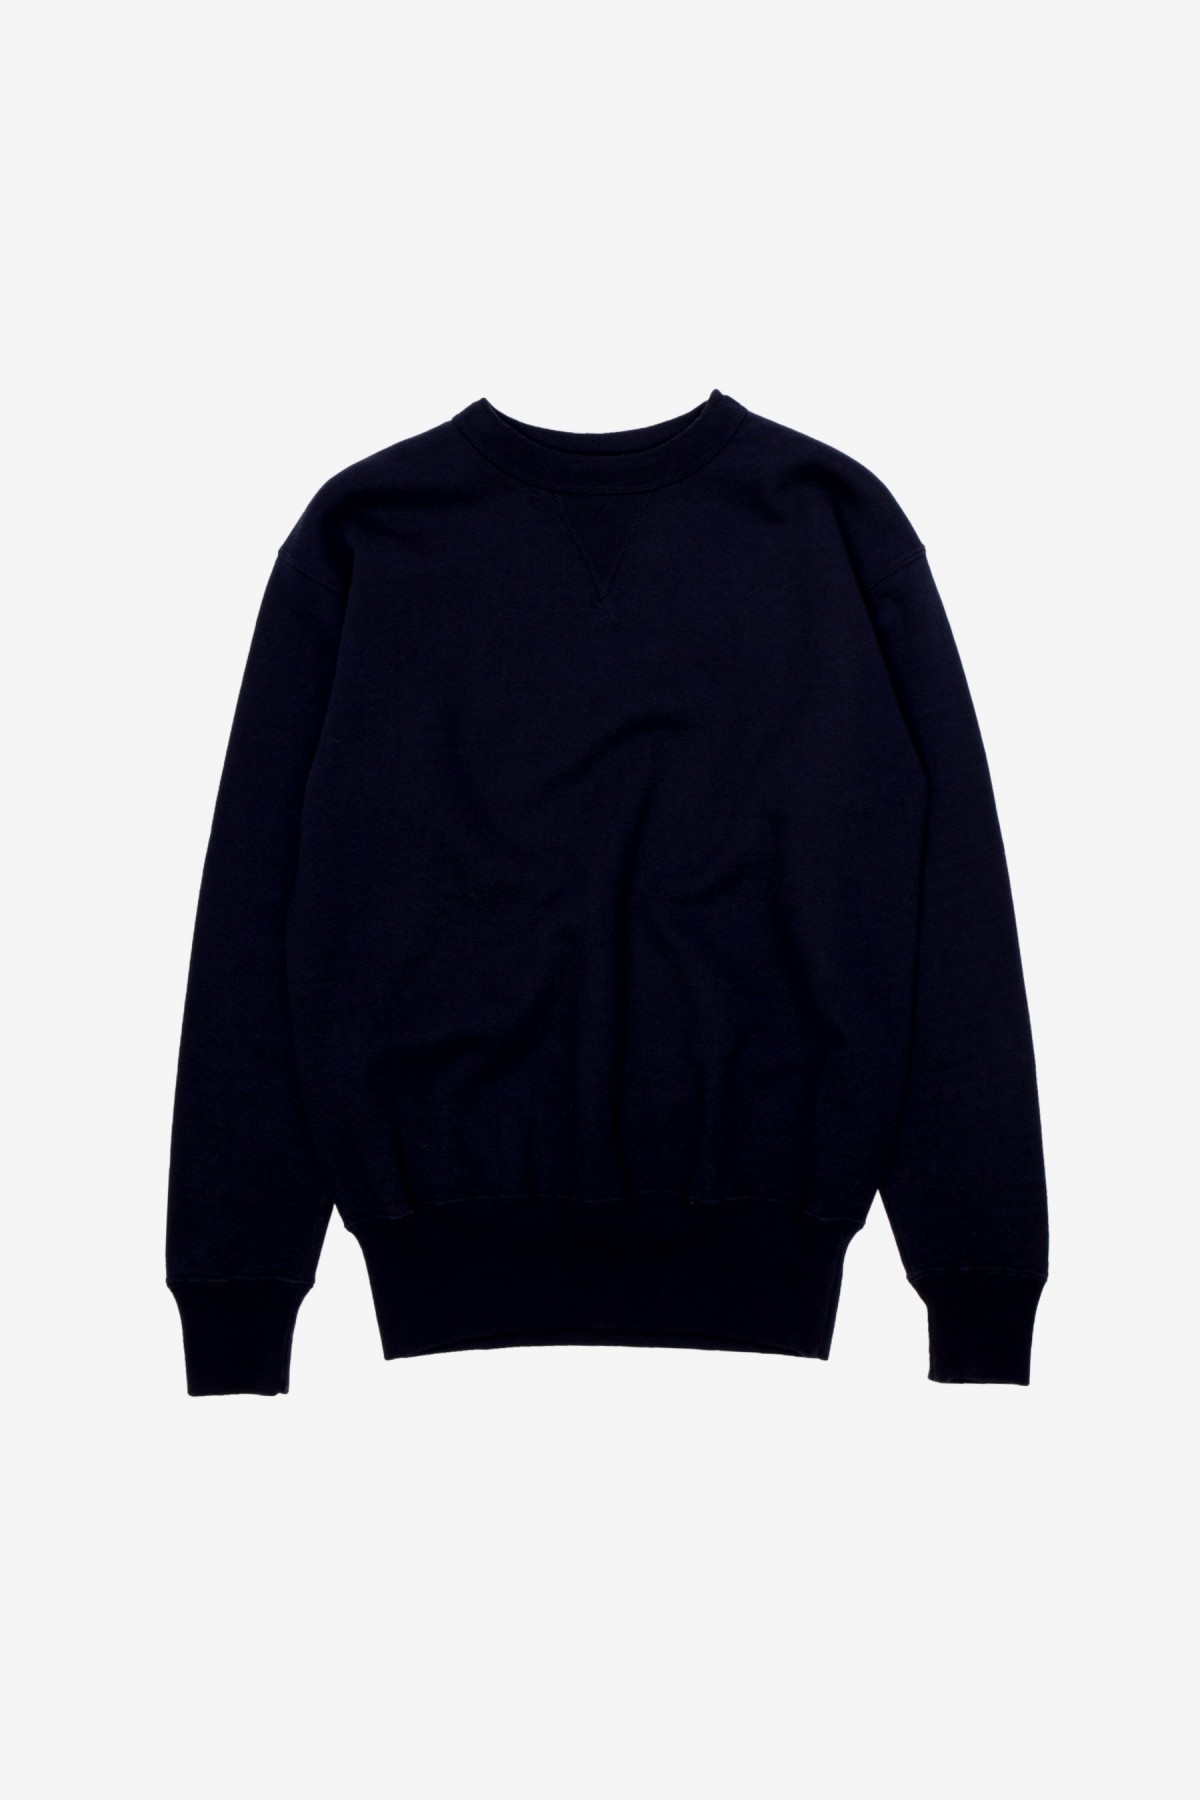 Sunray Sportswear Laniakea Crewneck Sweater in Dark Navy